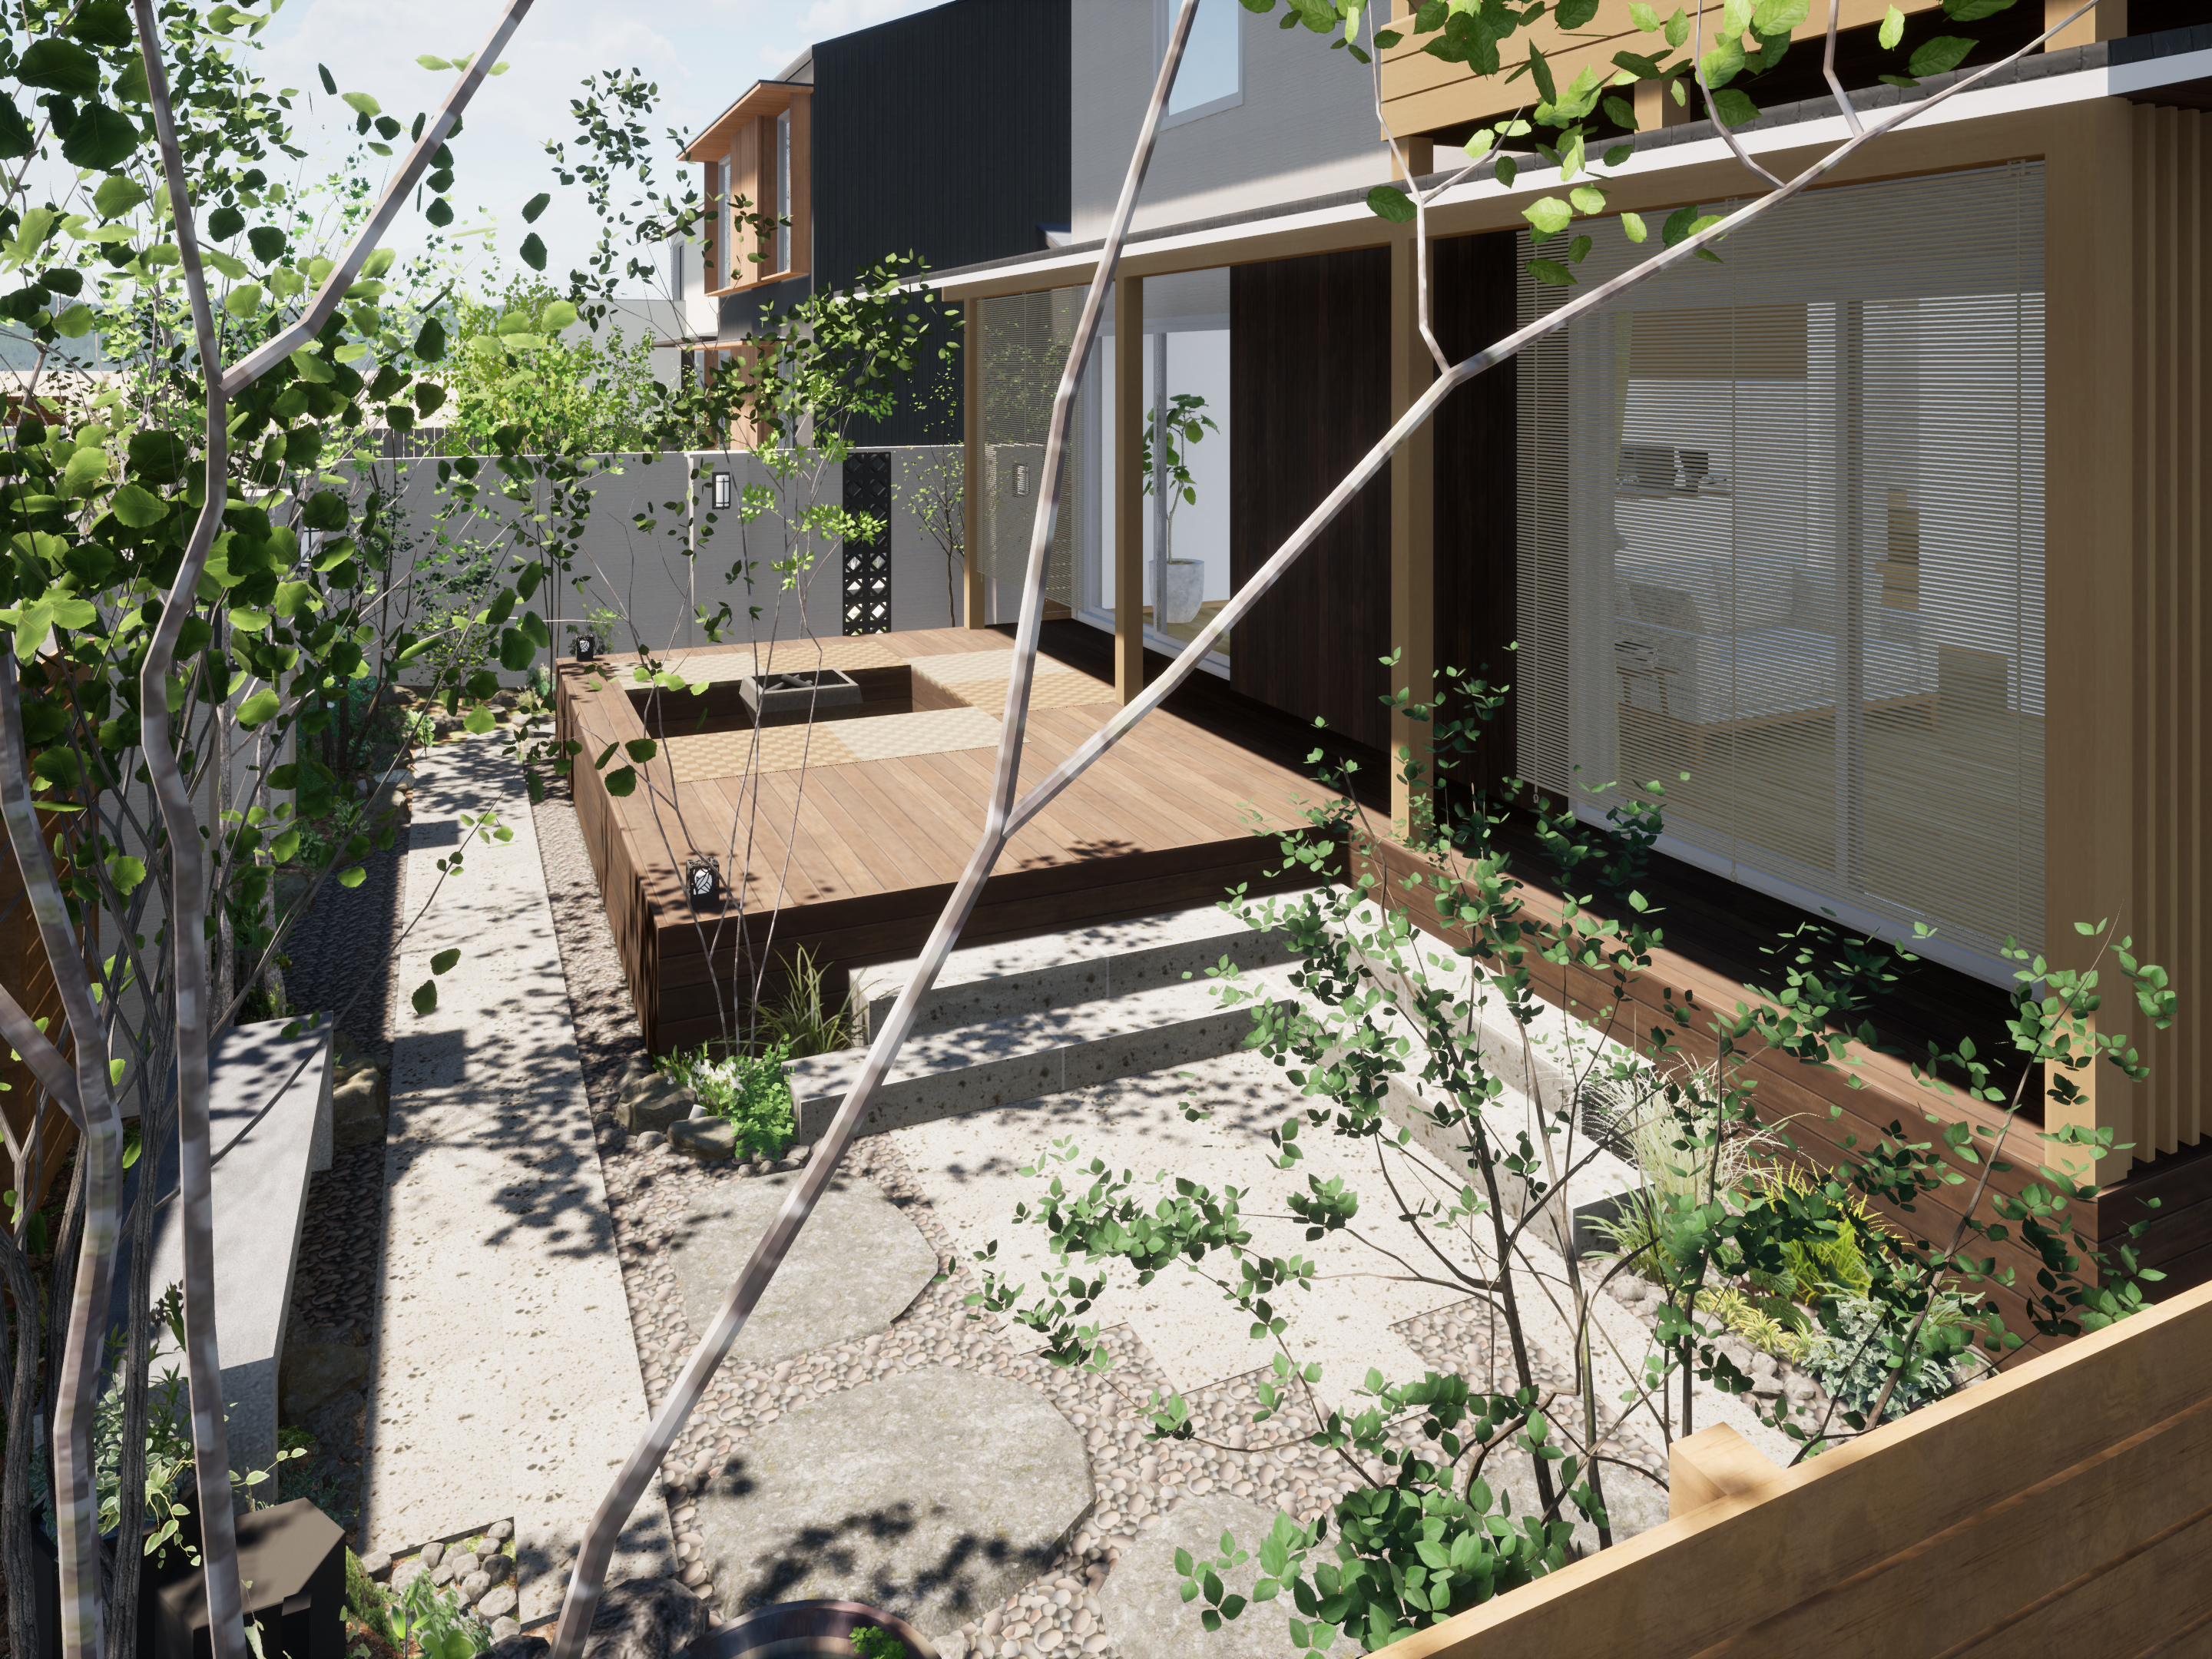 日本の素材と和の要素を取り入れた新しいデザインが織りなす 自然と伝統への回帰と懐かしさを感じるスタイル エクスプラット エクステリア ガーデンデザイン プラン検索サイト Rikcadデータ無料配信